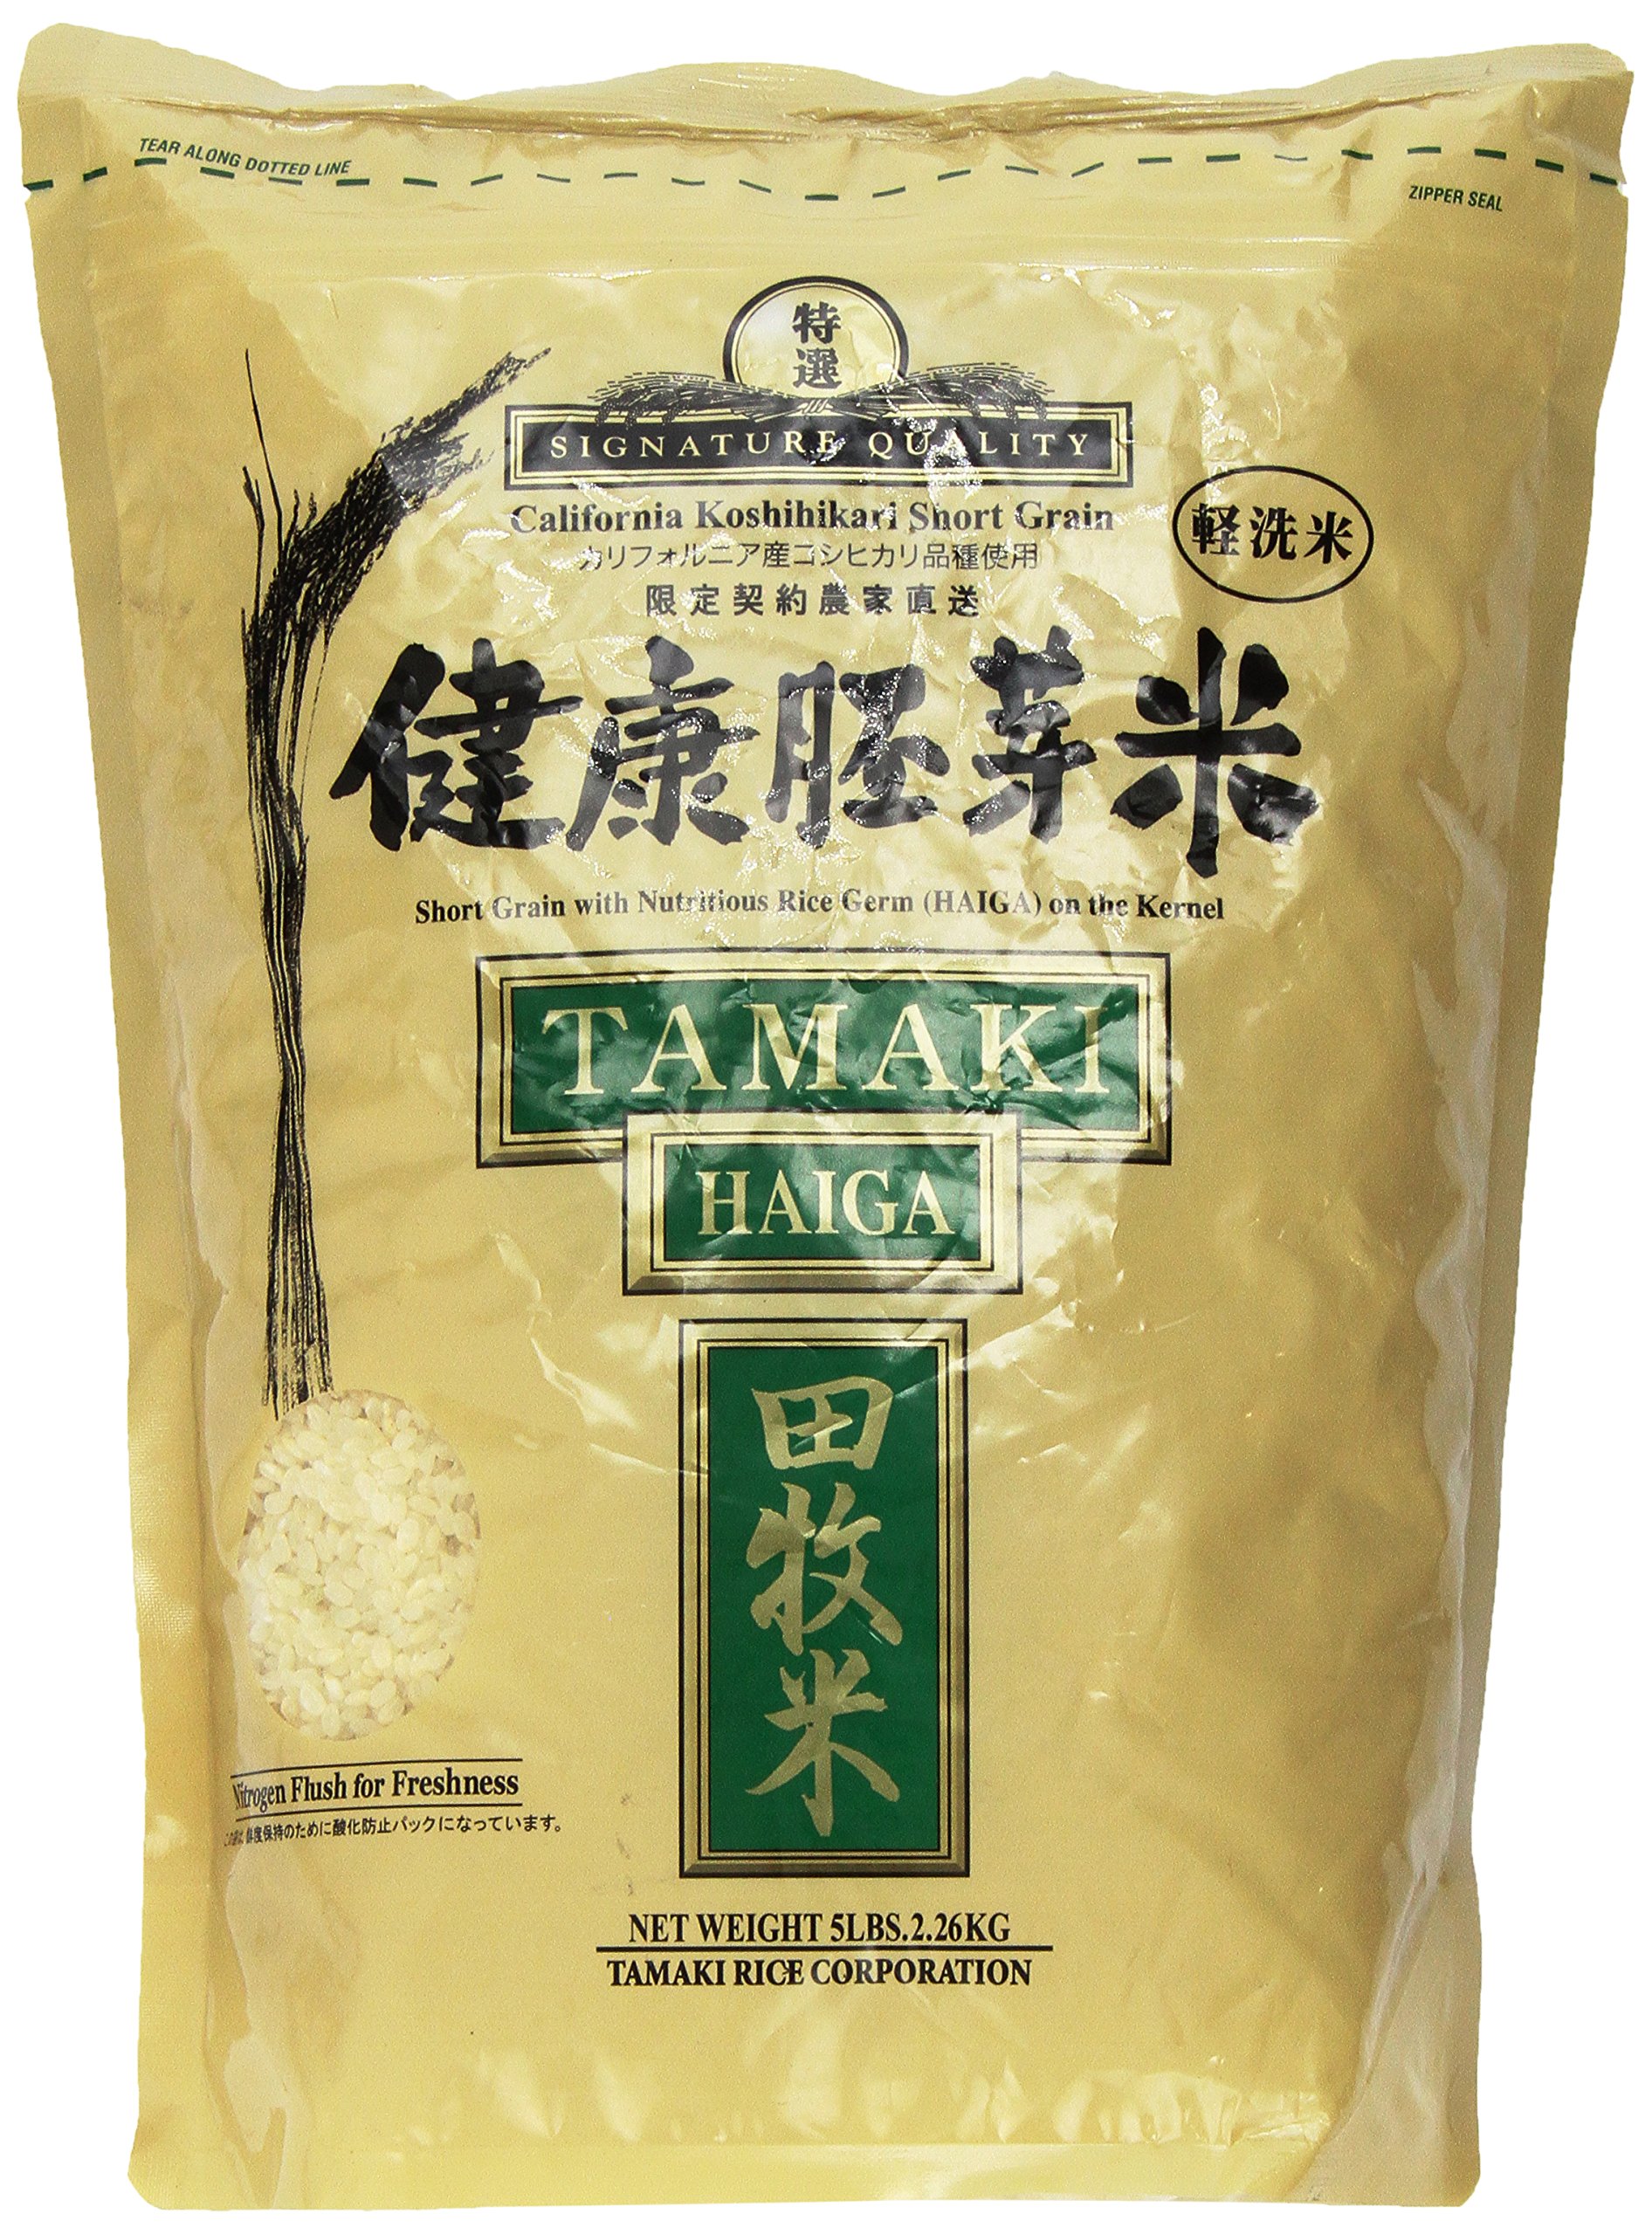 Tamaki Haiga - Shortgrain Rice